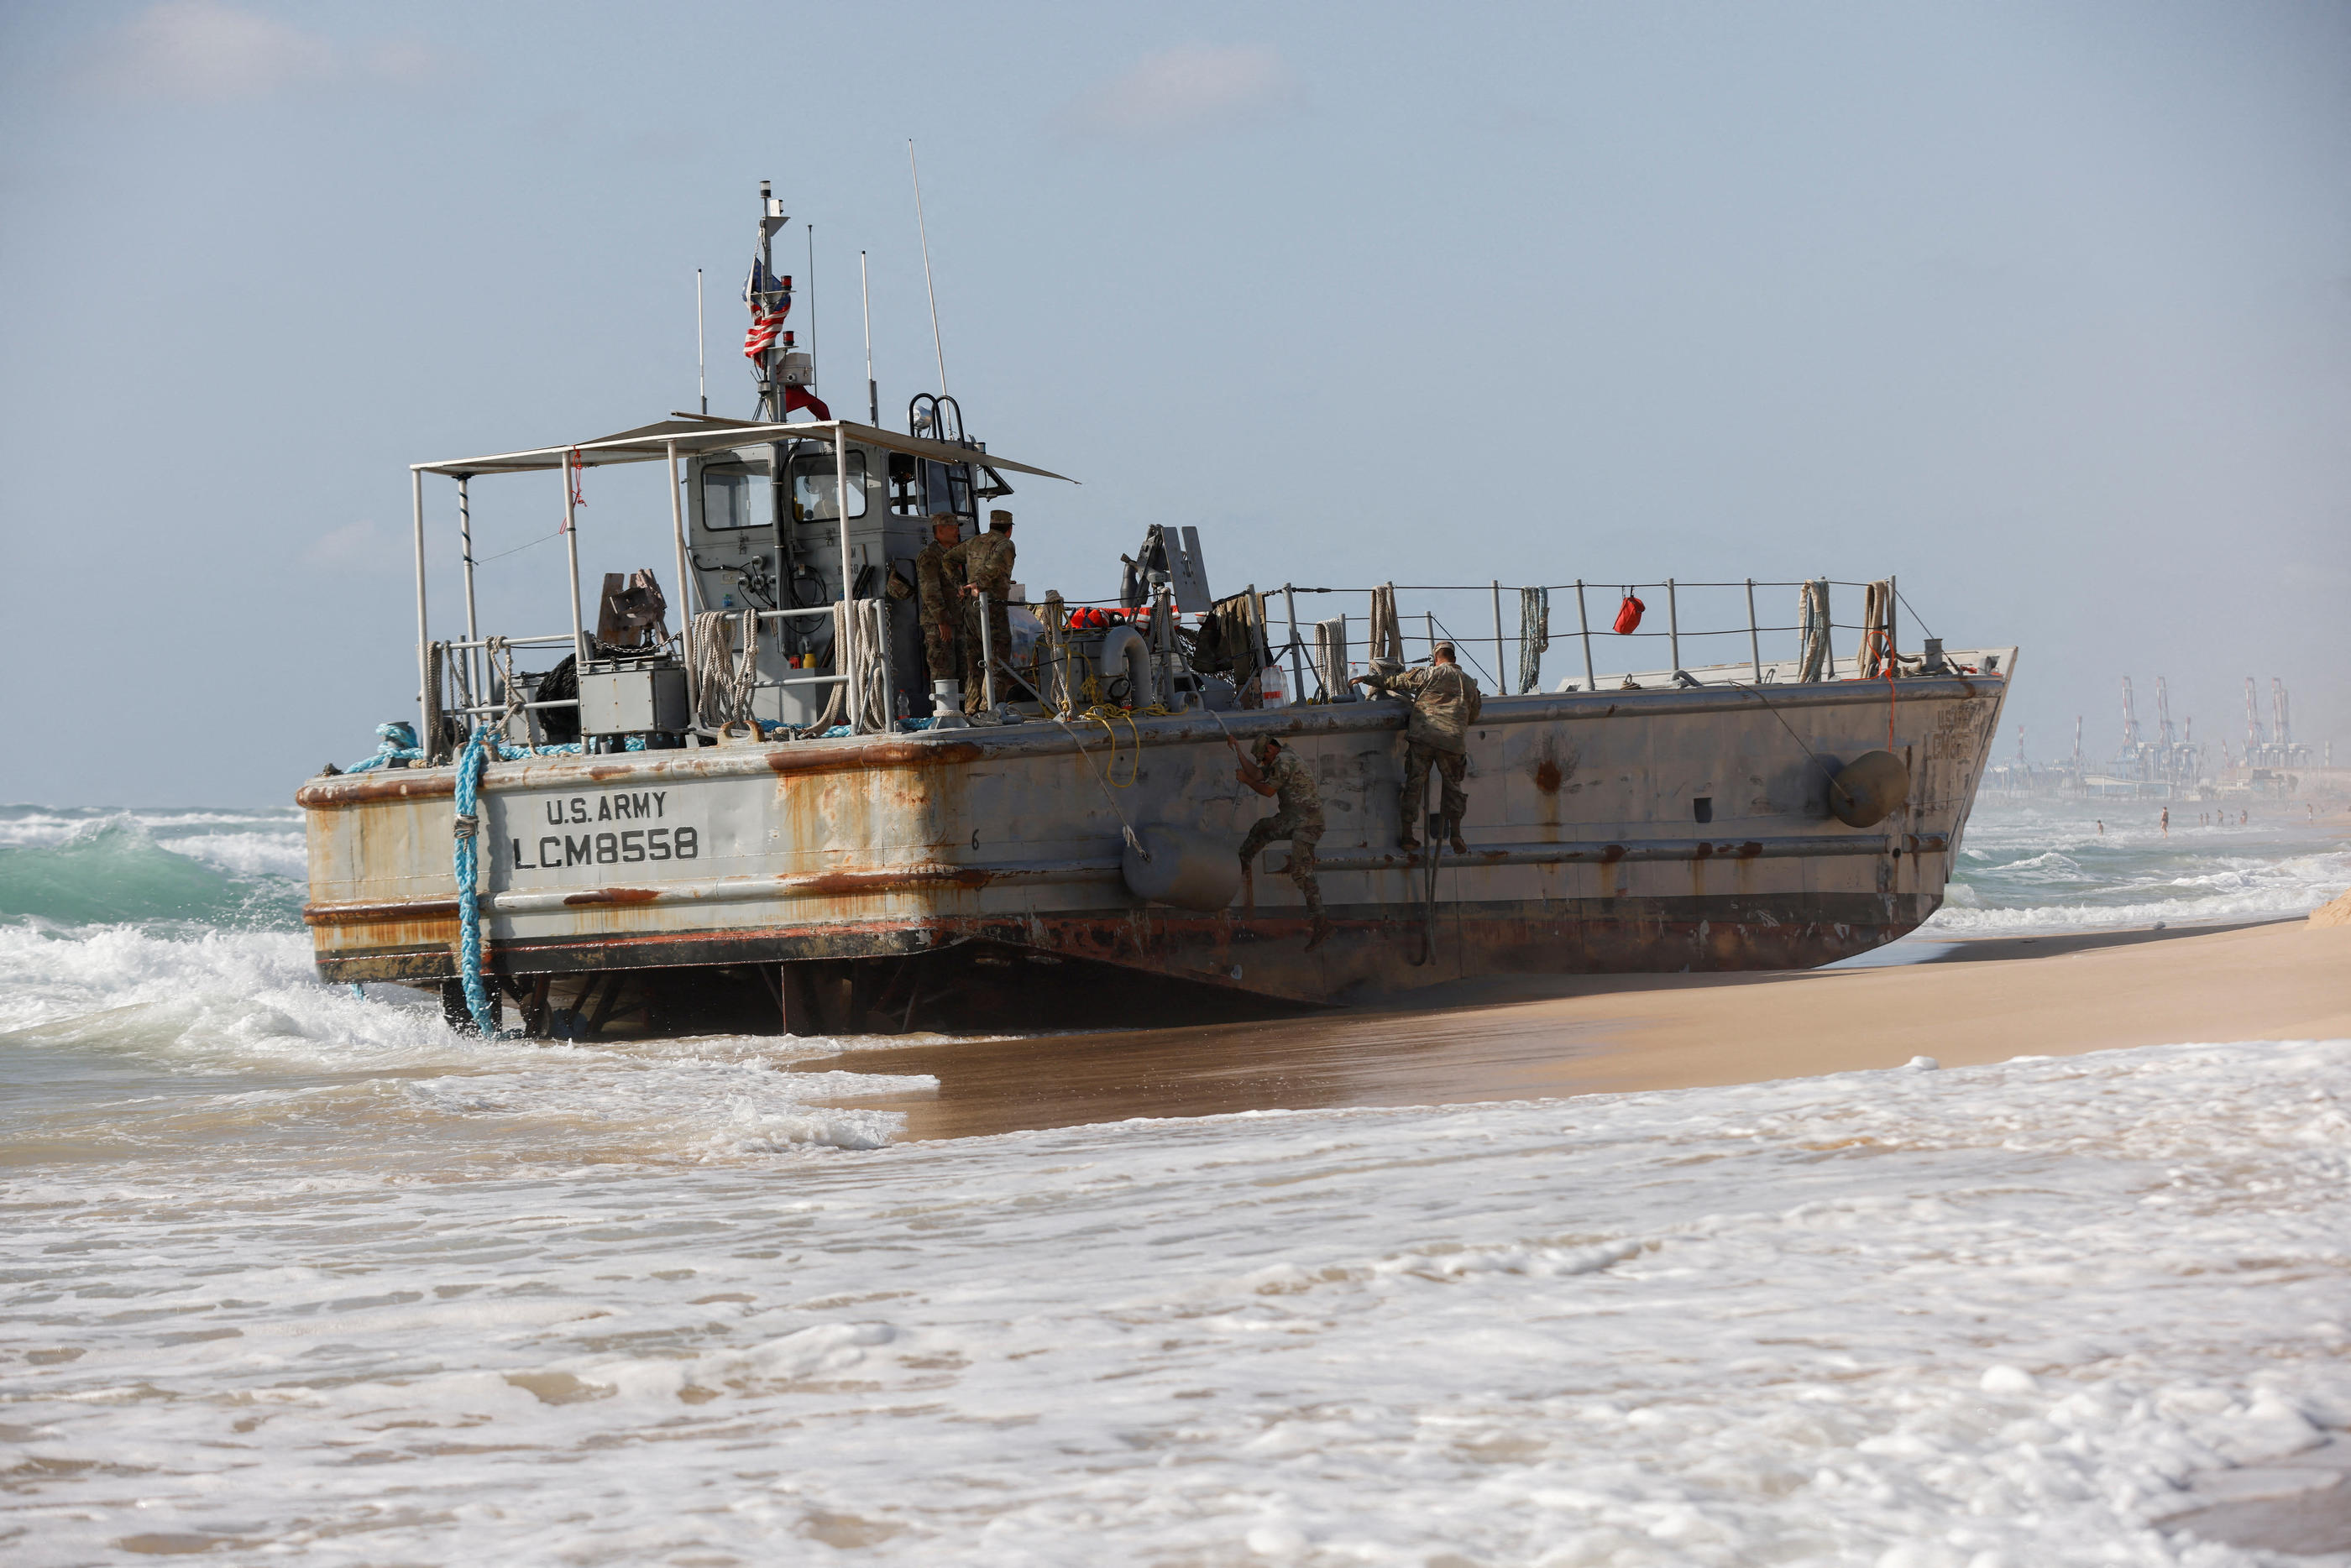 Deux des quatre navires se sont échoués samedi sur la côte israélienne près d’Ashkelon. Reuters / Amir Cohen